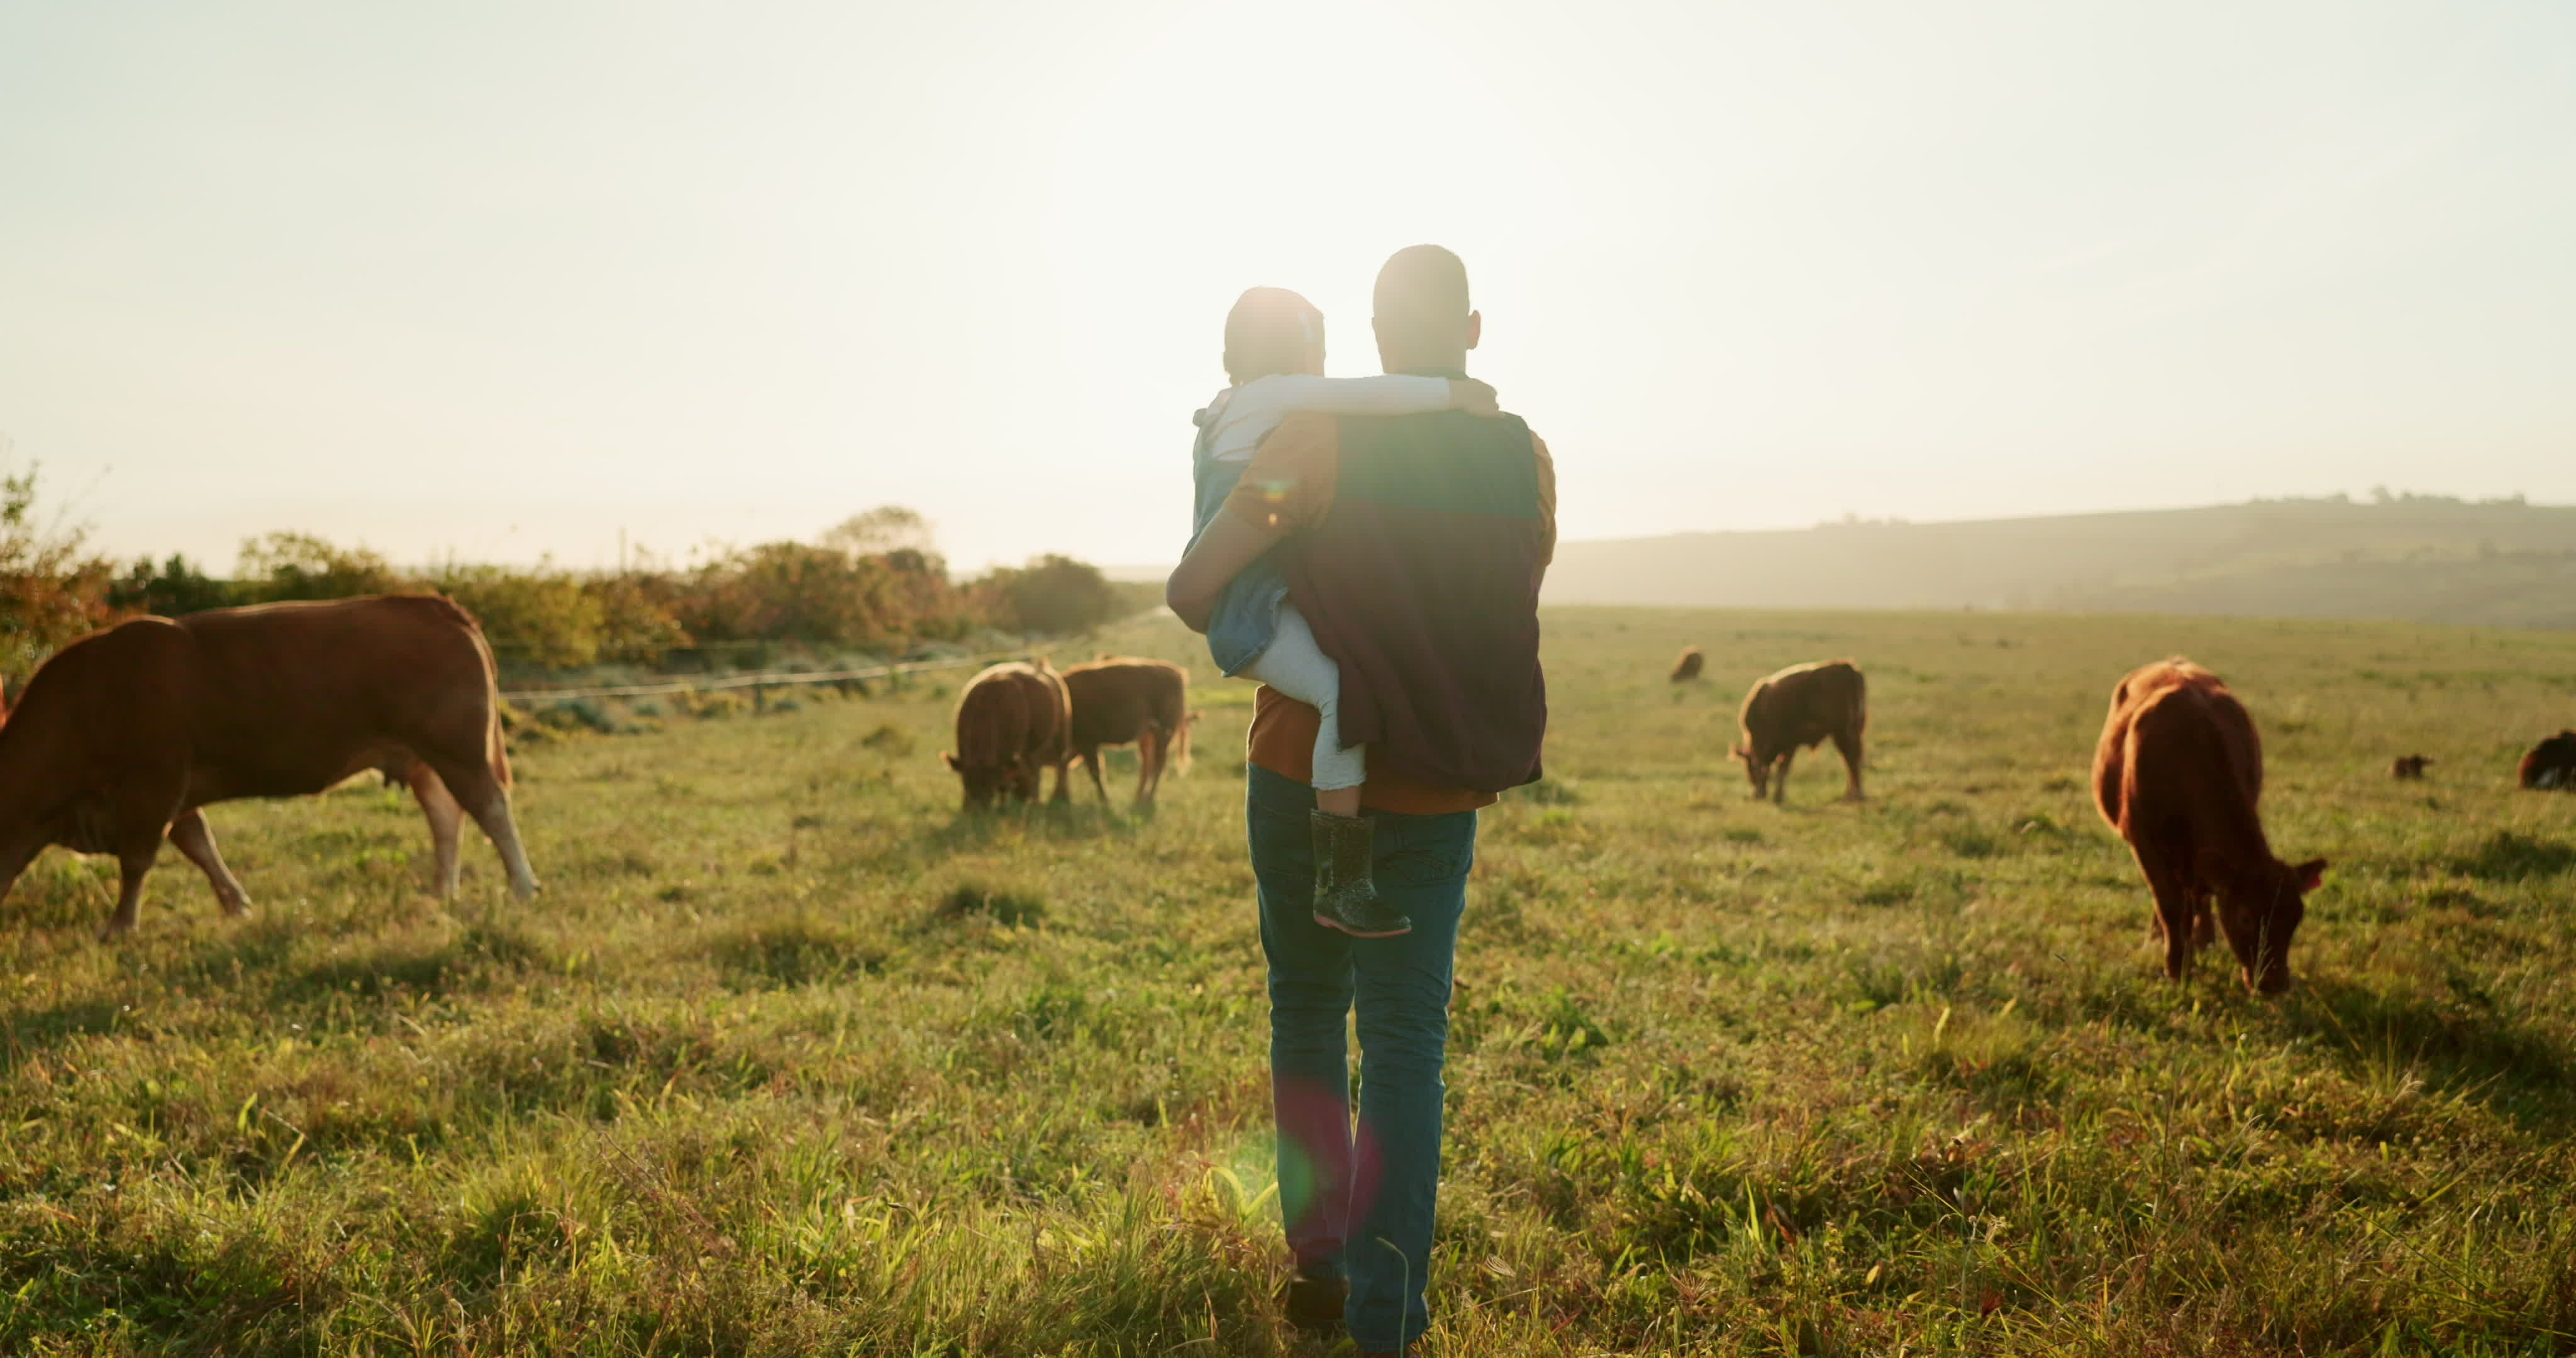 Mann mit Kind auf dem Arm geht in Richtung Sonnenuntergang auf Weide, auf der Rinder grasen.